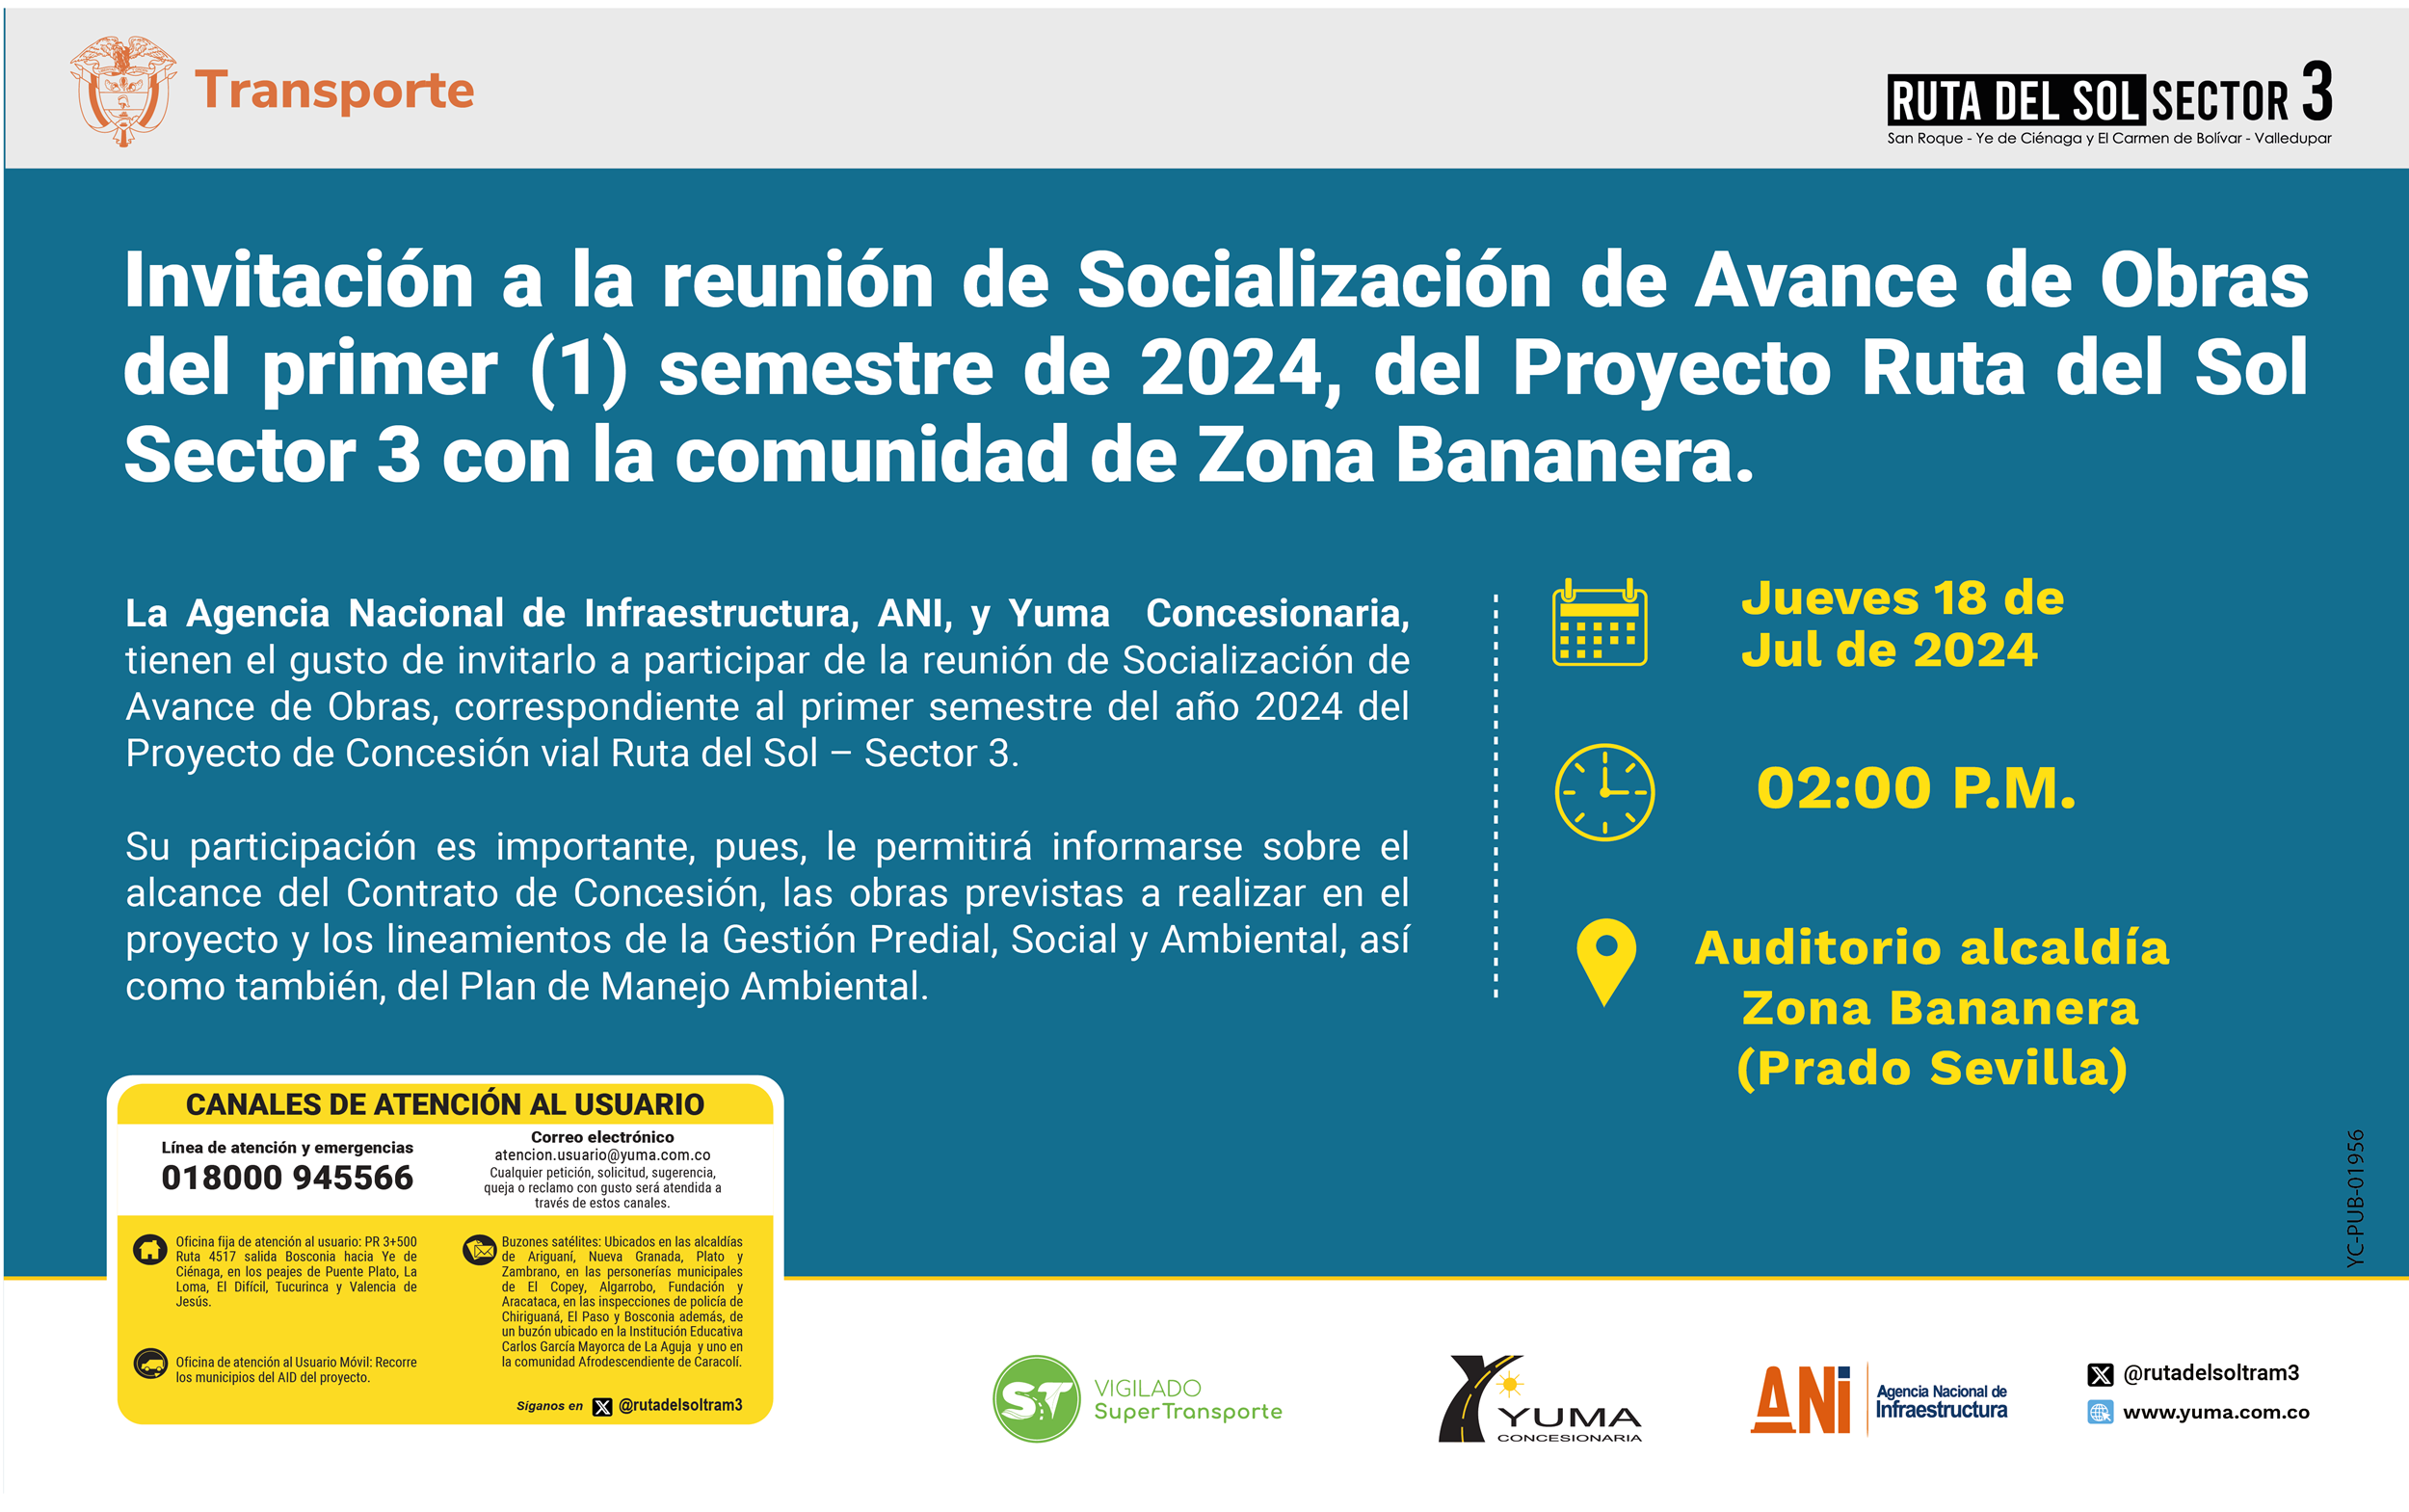 En este momento estás viendo Invitación a la reunión de Socialización de Avance de Obras del primer semestre de 2024 con la comunidad de Zona Bananera